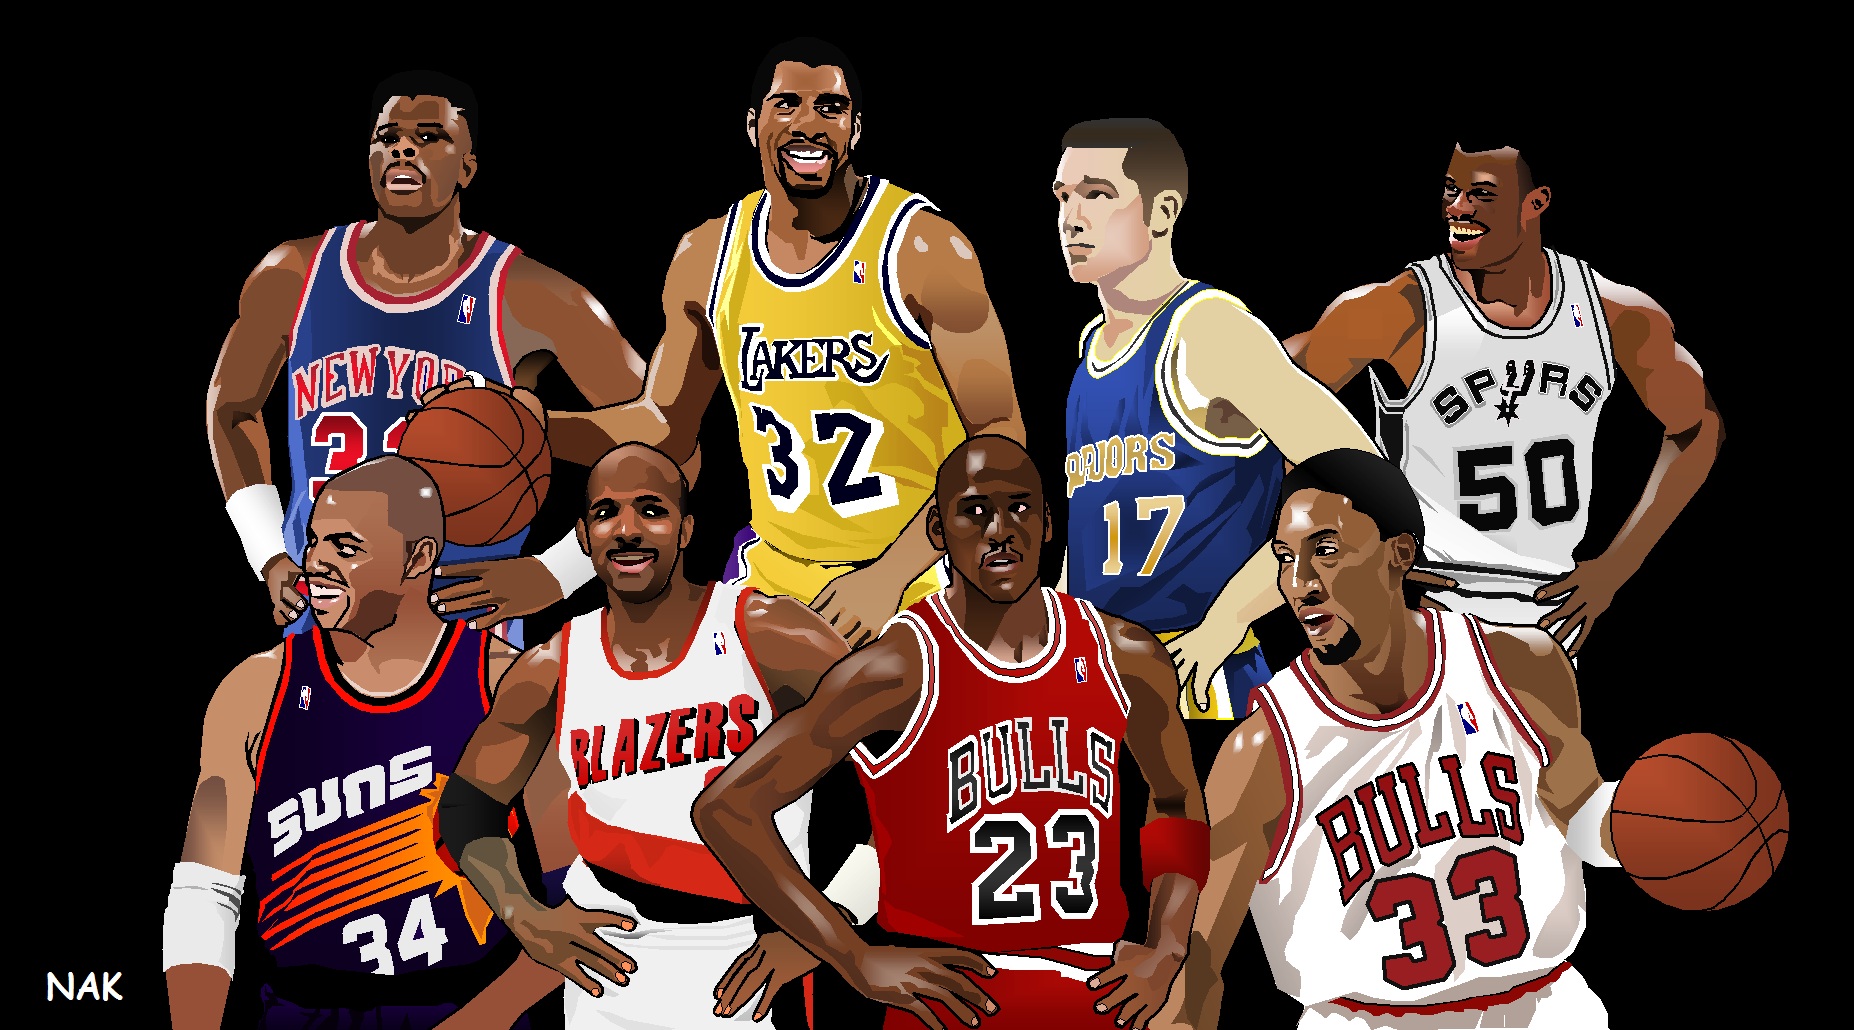 nba legends wallpaper,basketball player,team,player,sports,team sport